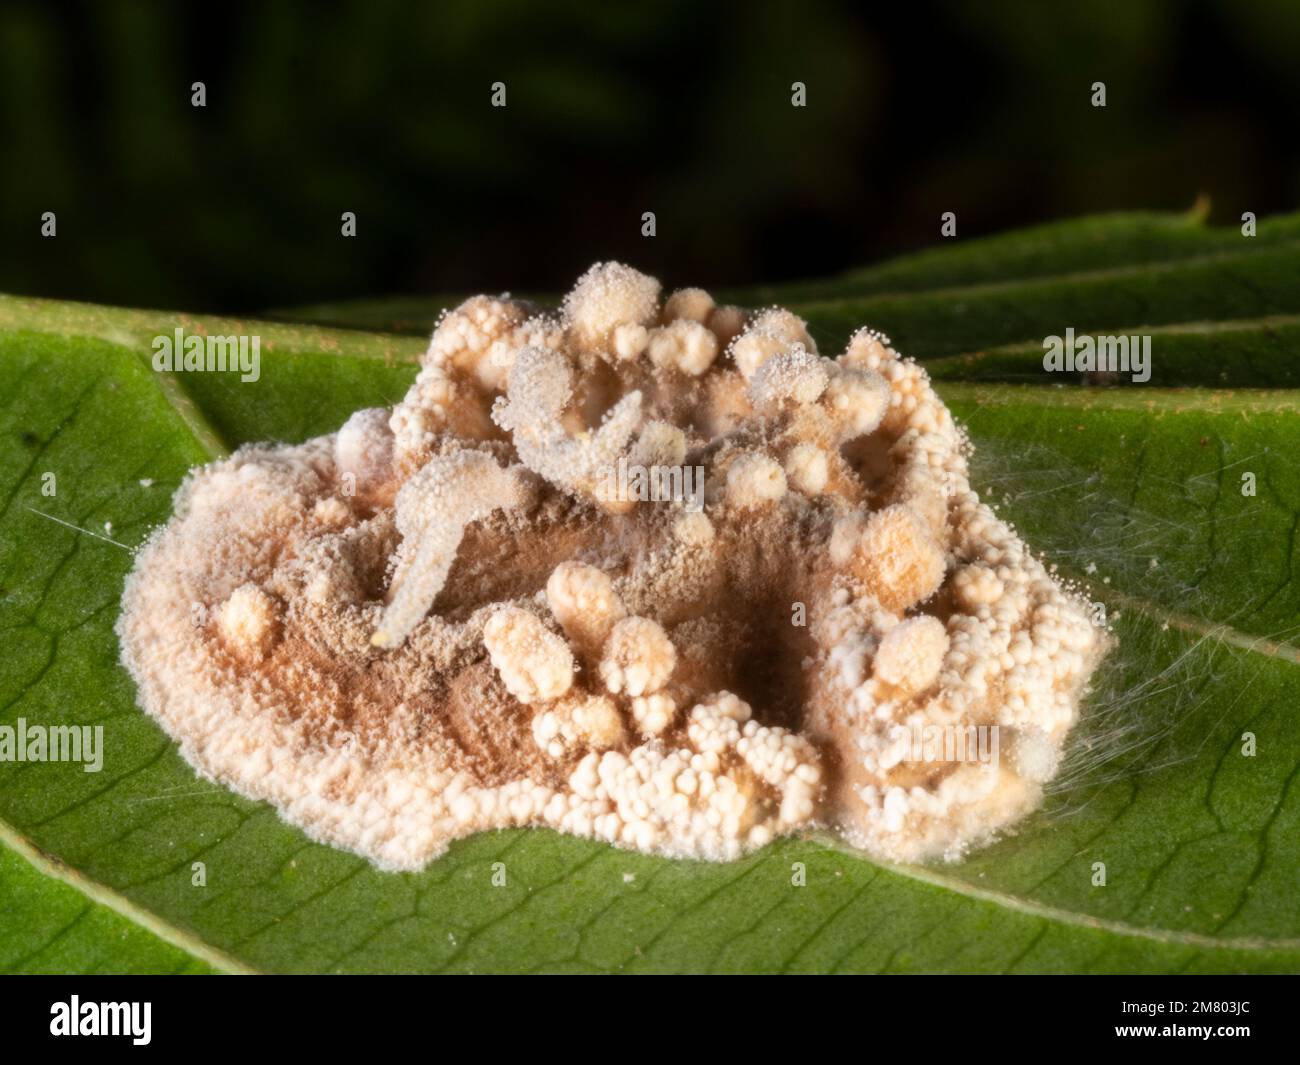 Los restos de un invertebrado, probablemente una araña, infectado y consumido por un hongo Cordyceps en el sotobosque de la selva, provincia de Orellana, Ecuado Foto de stock